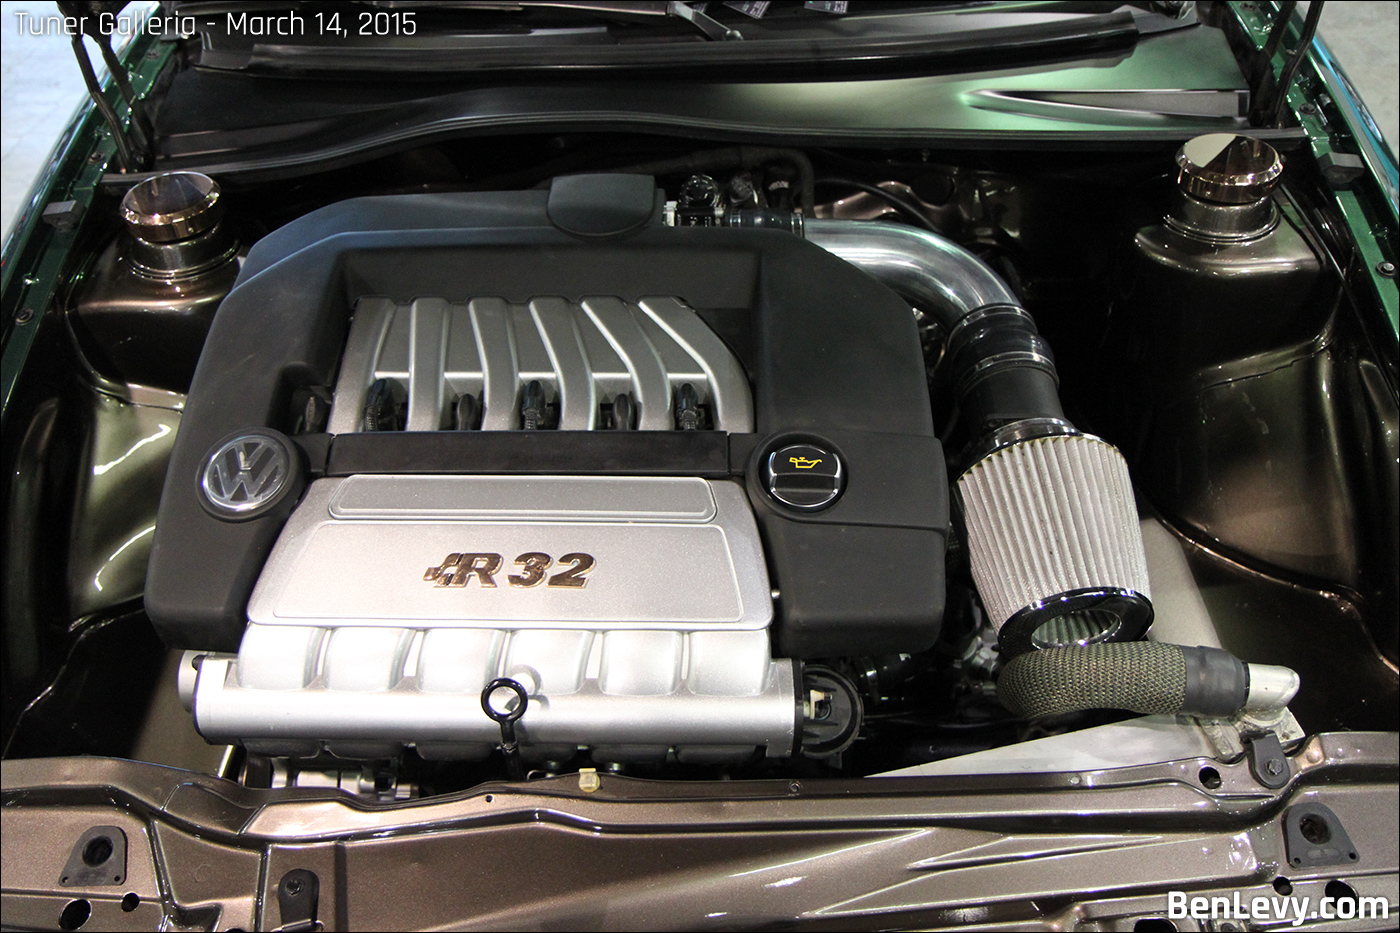 R32 engine in Corrado